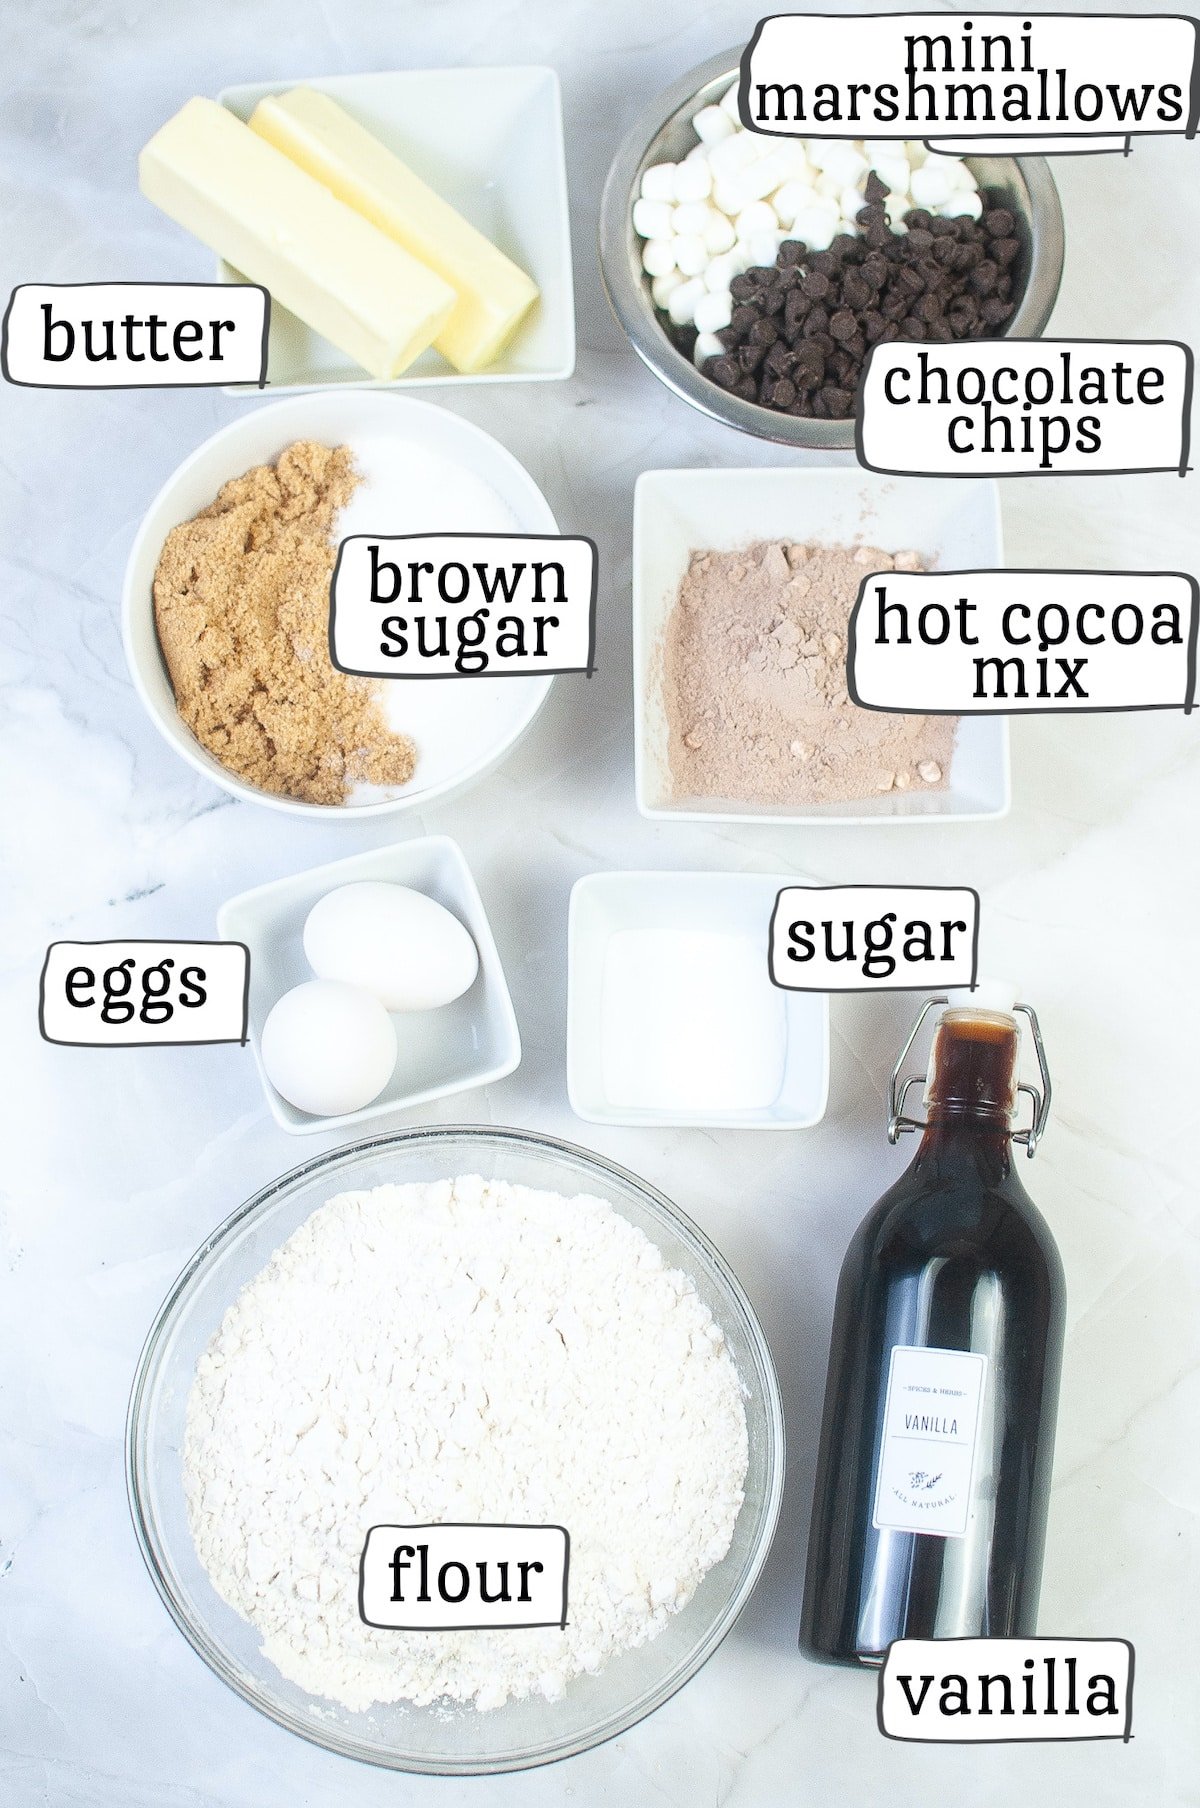 Hot cocoa cookies ingredients.